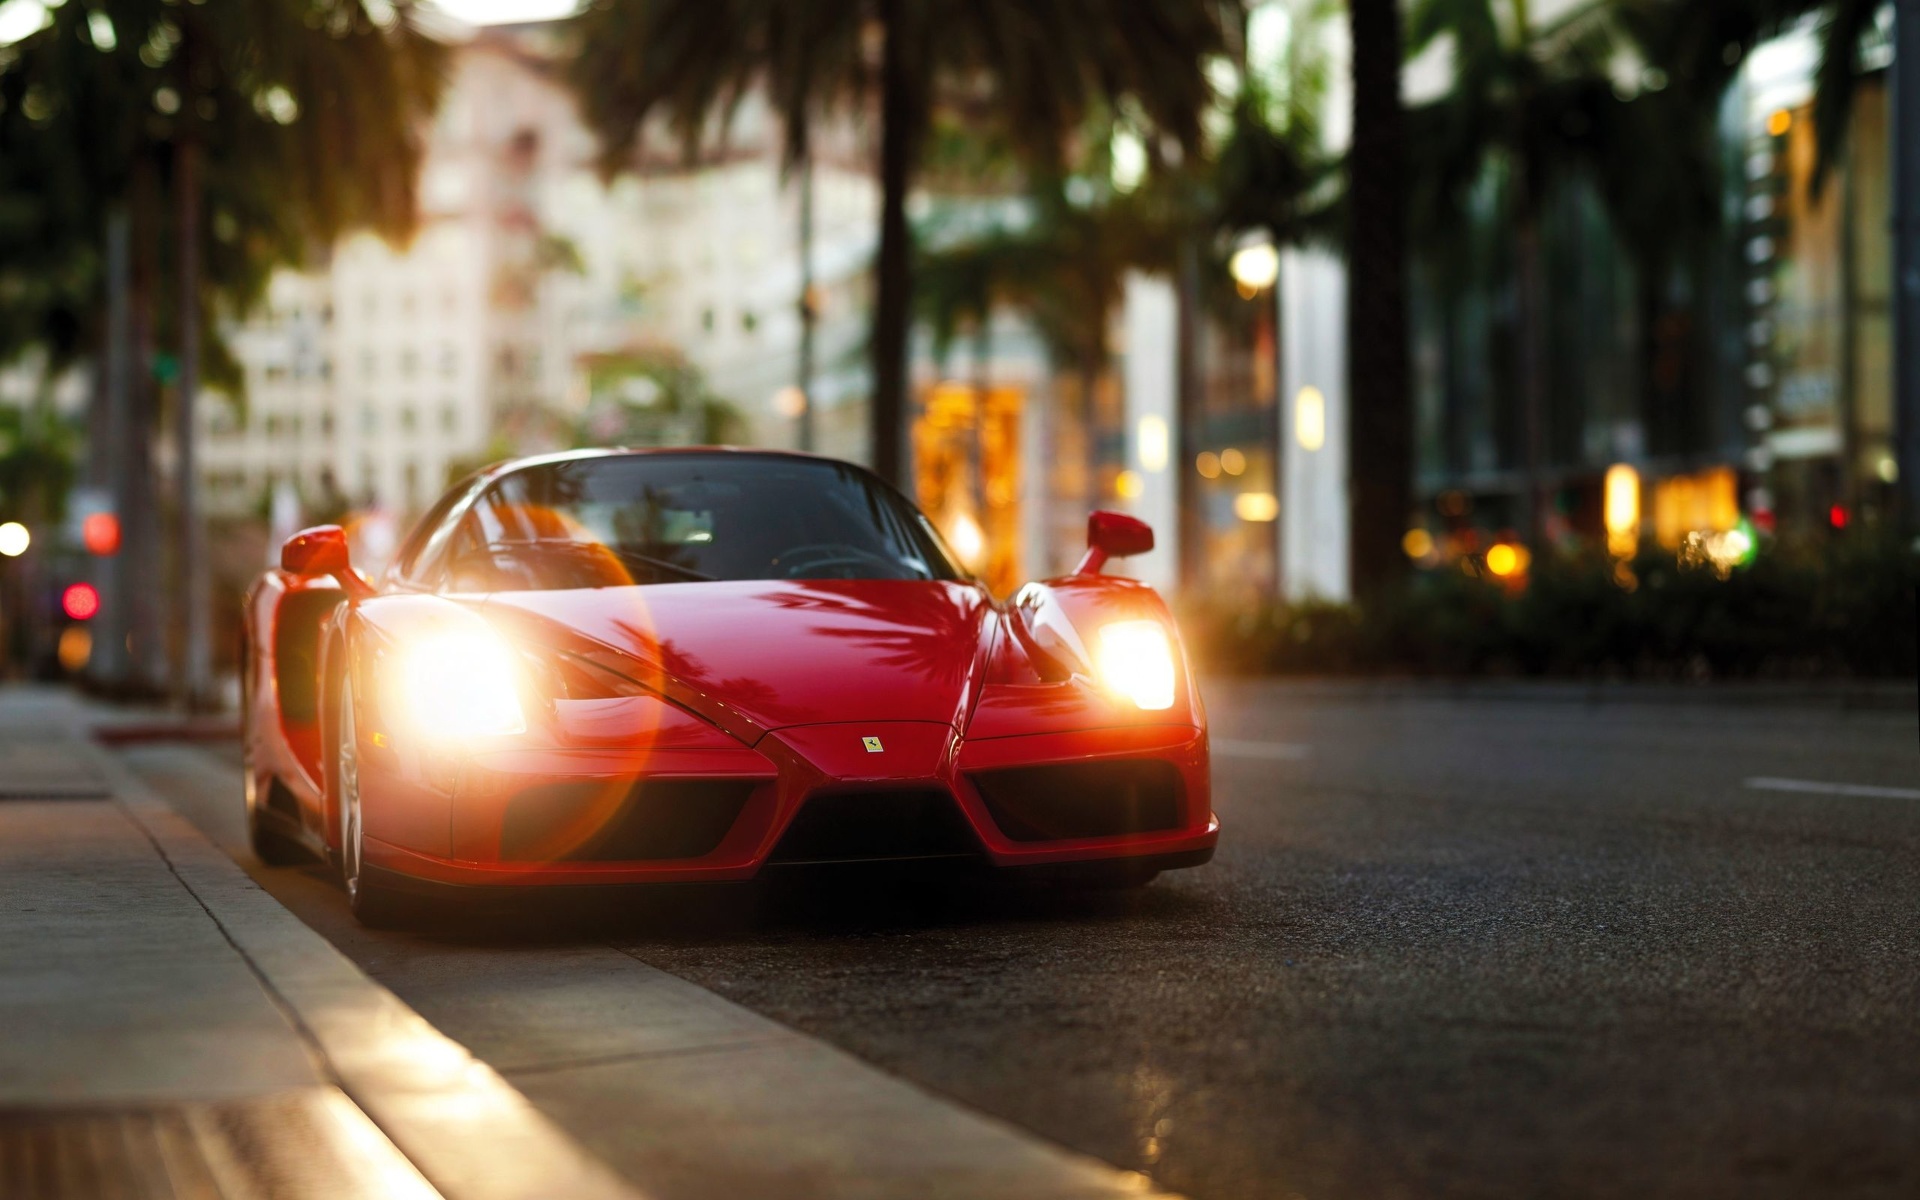 Ferrari Miami - fond d'écran HD.jpg